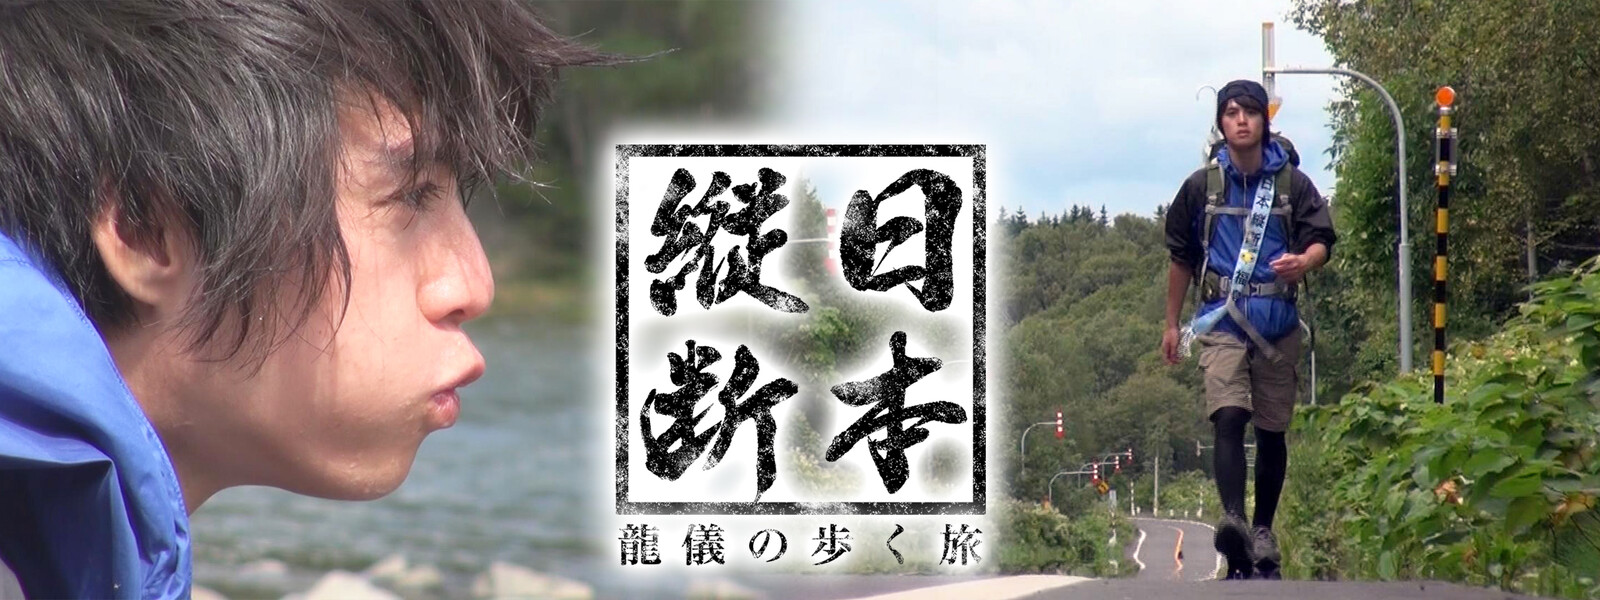 日本縦断 龍儀の歩く旅 動画